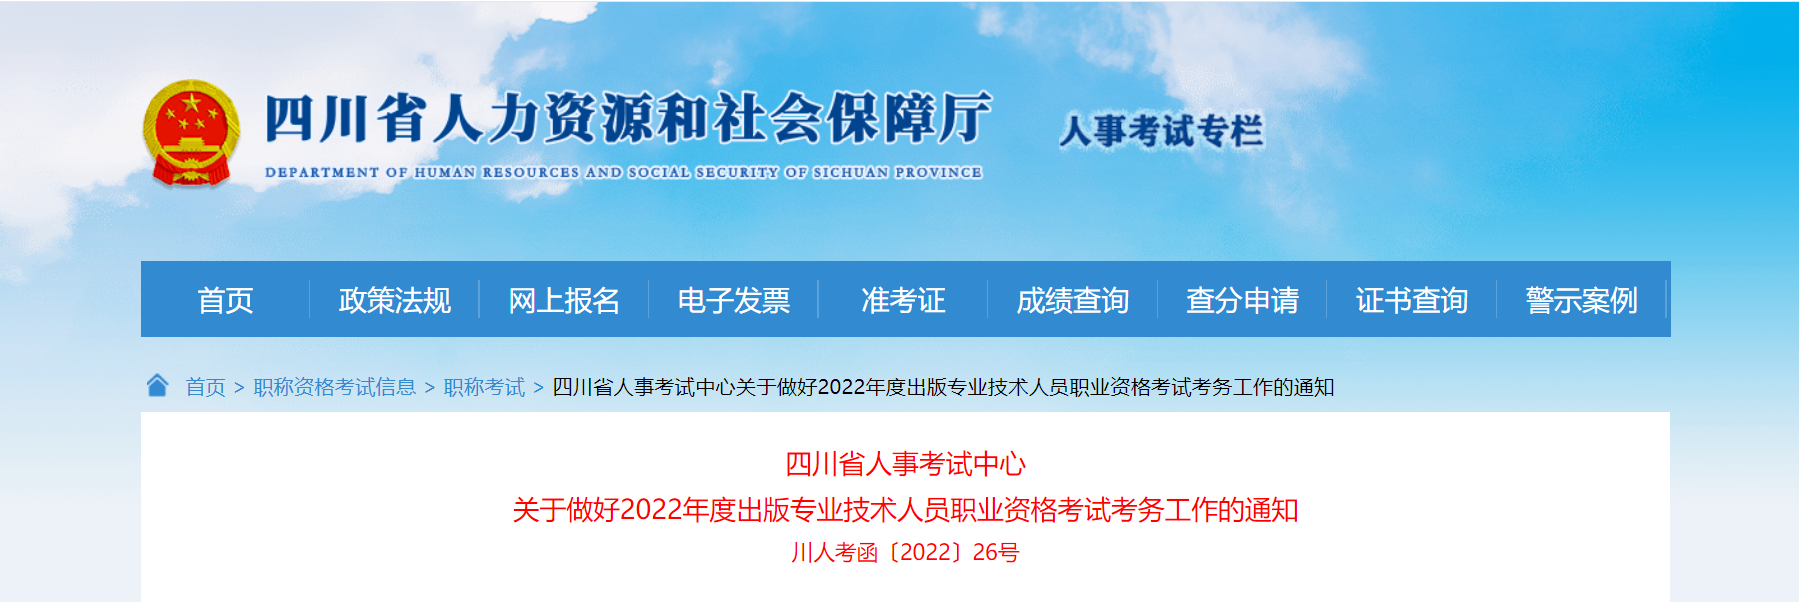 2022年四川出版专业技术人员职业资格考试考务工作的通知